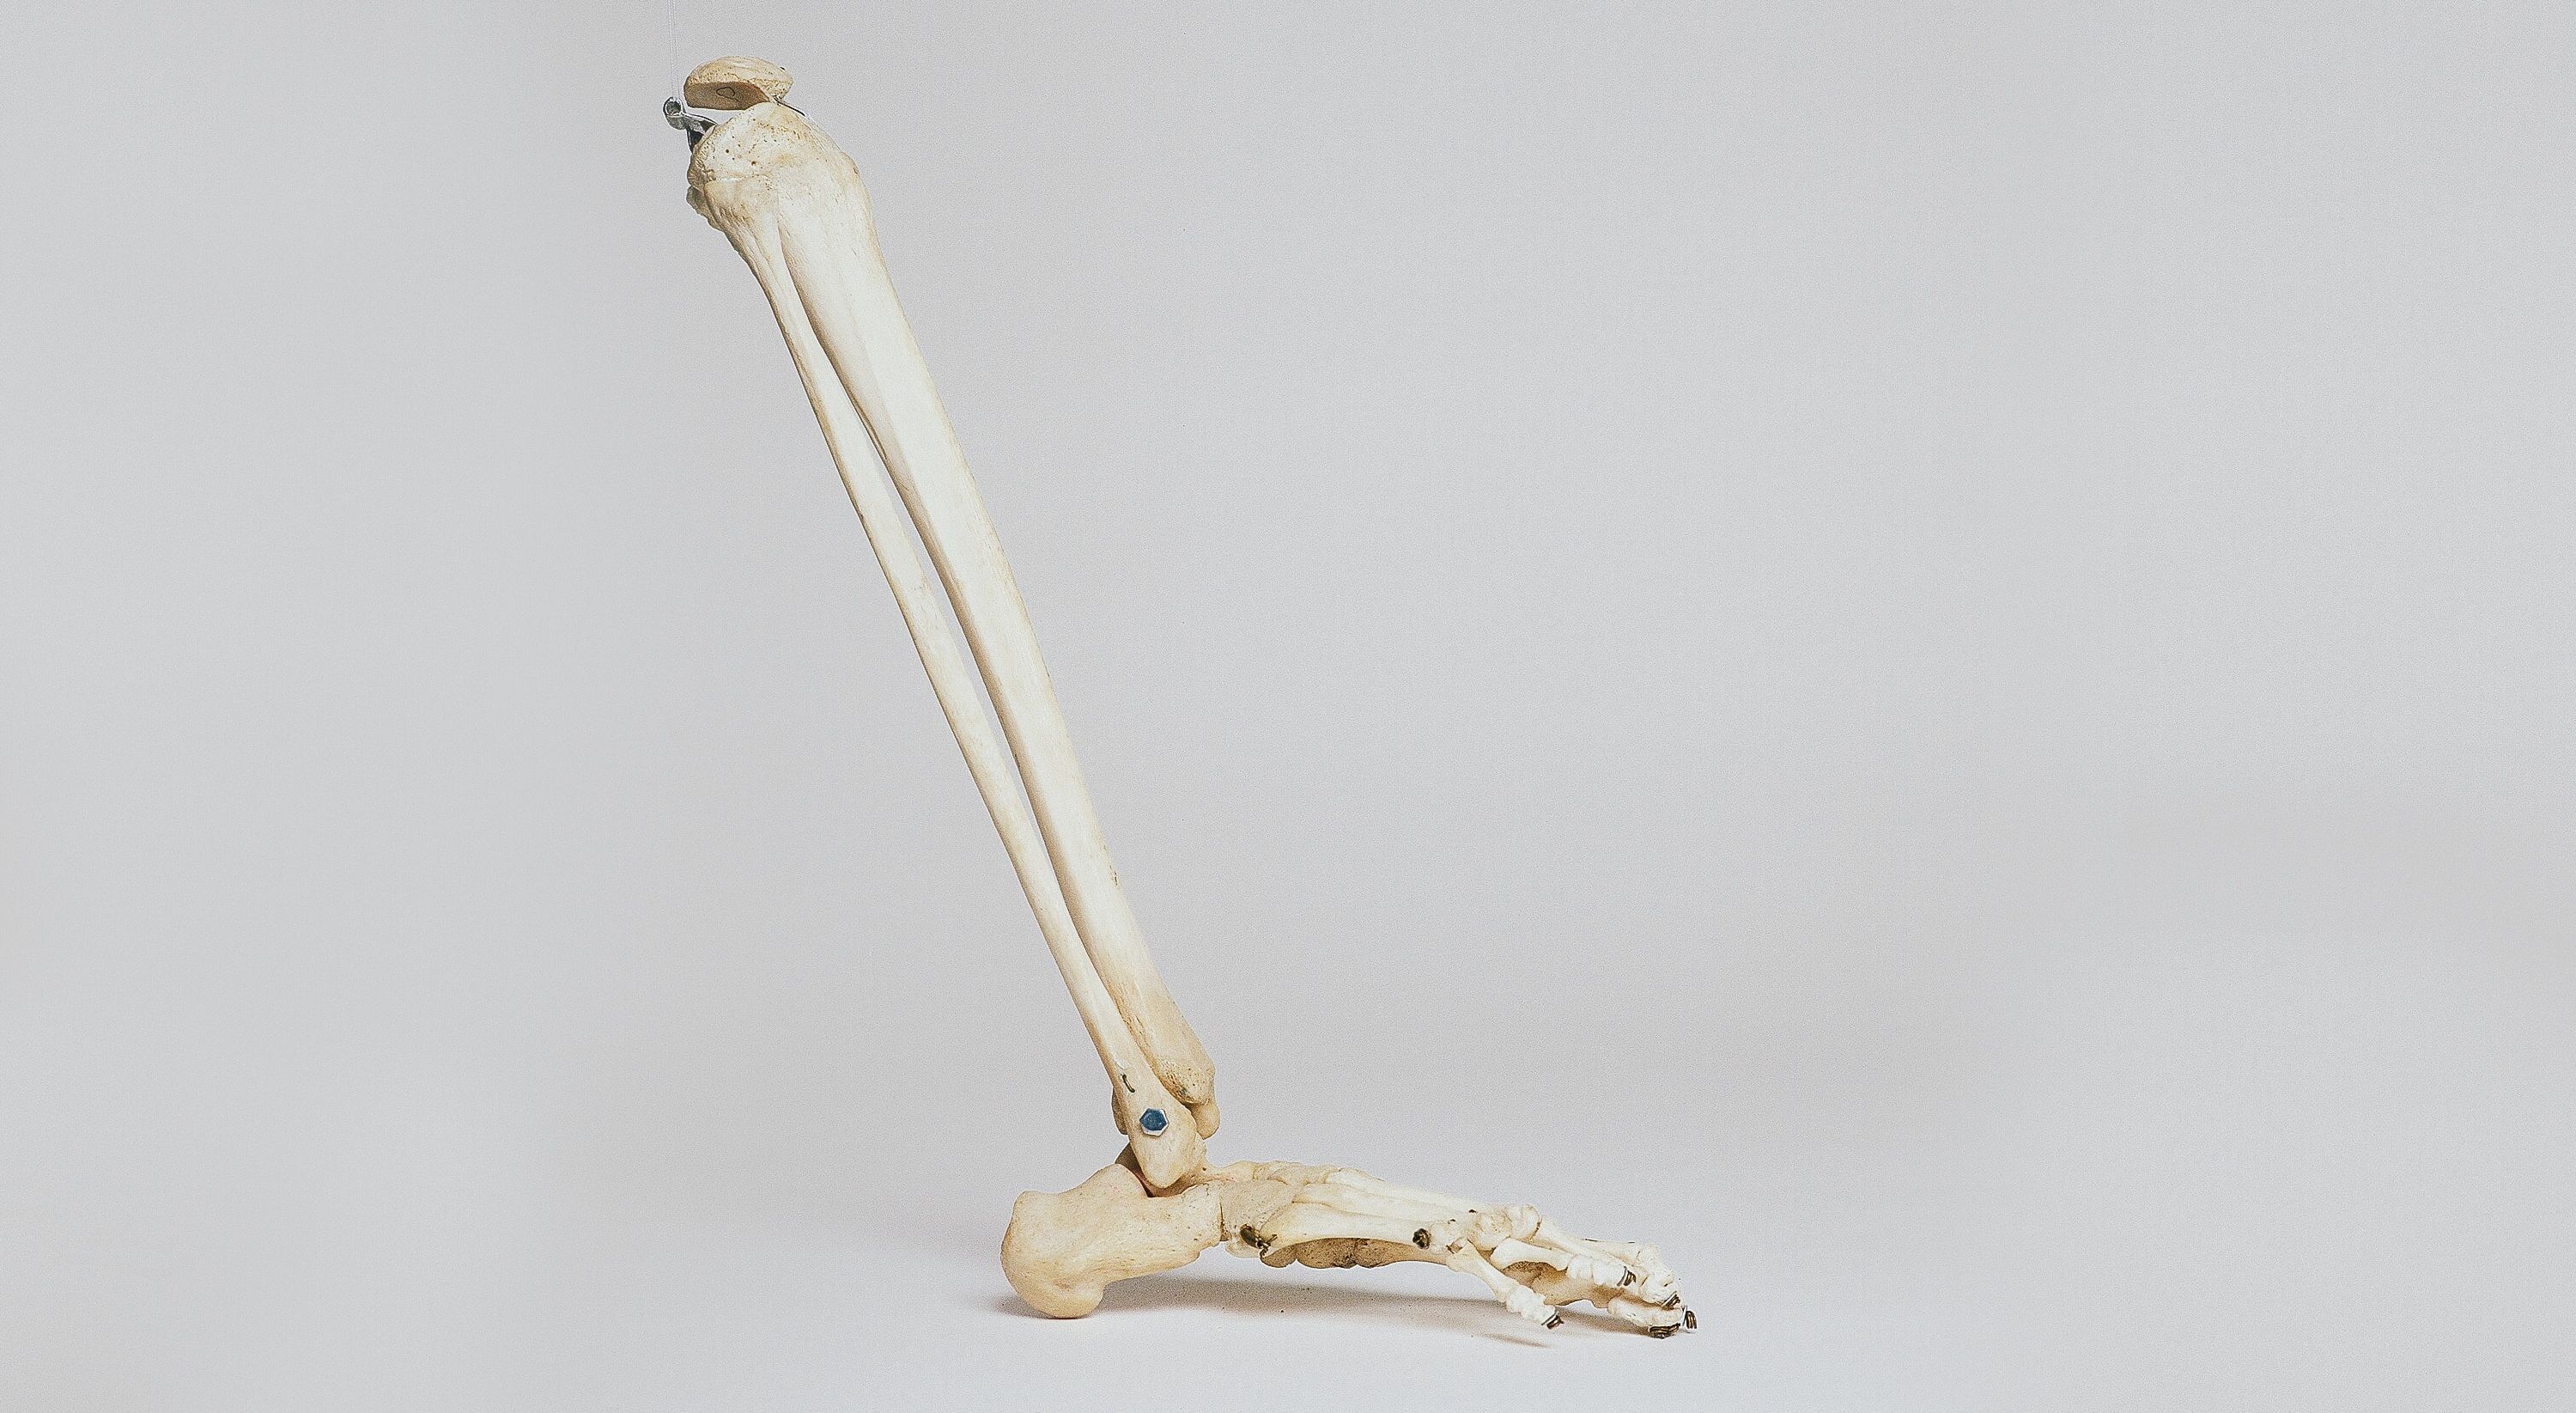 Osteoporóza - tichý zlodej kostí